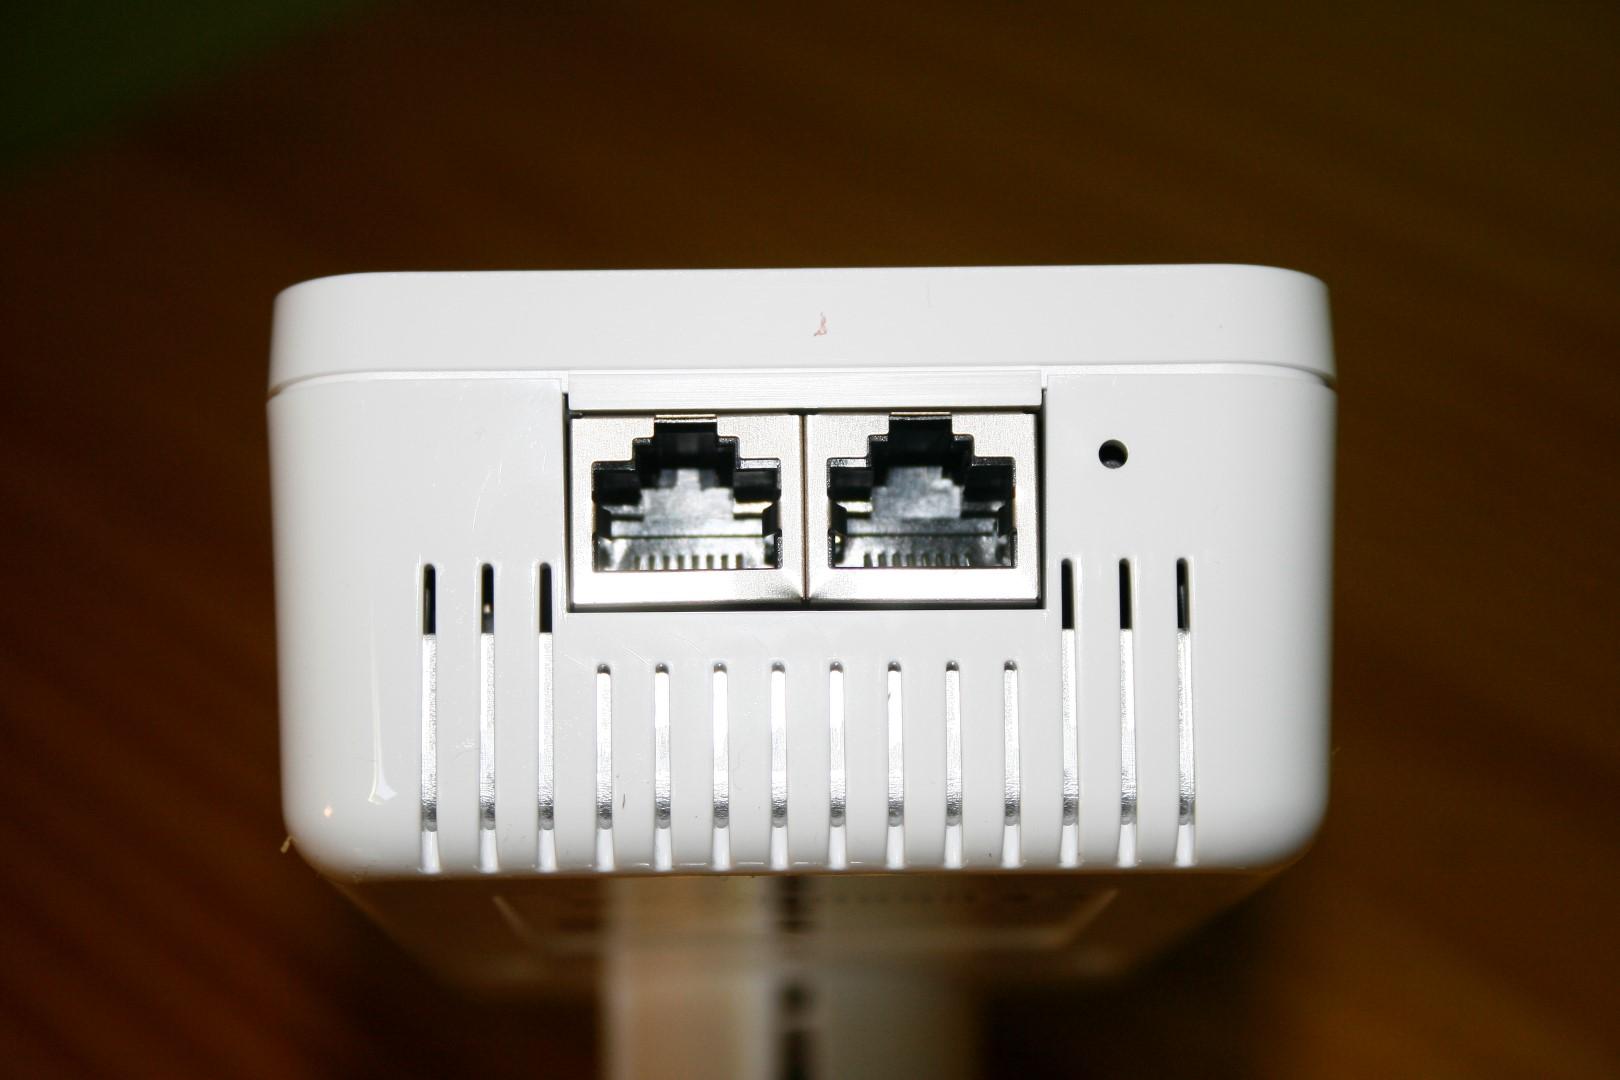 Detalle de los puertos de red y el botón de reset del plc supletorio de los devolo dLAN 1200+ WiFi ac